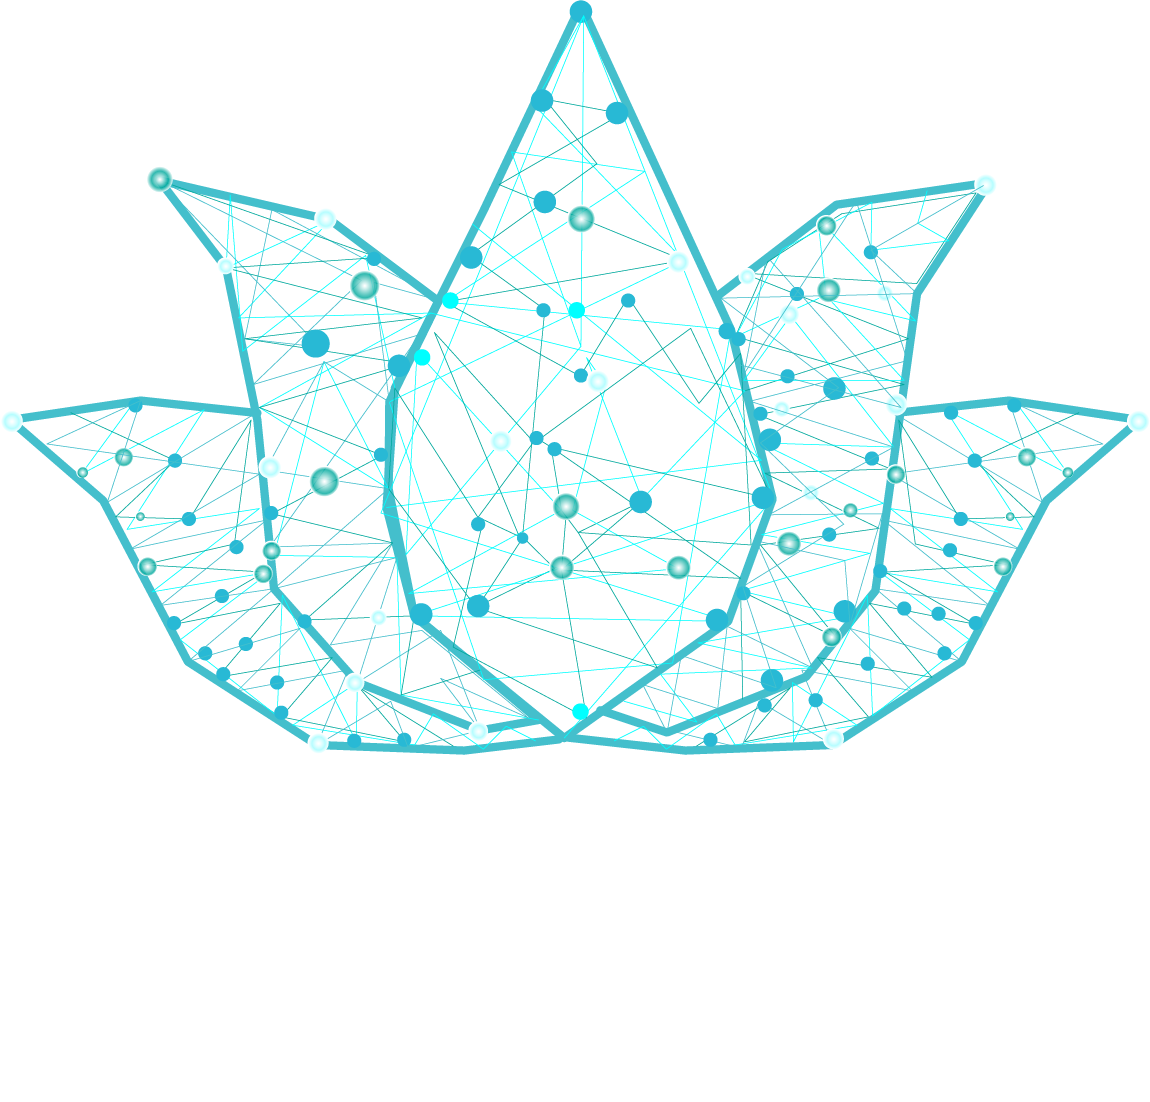 Oddinaya-ventures-logo1